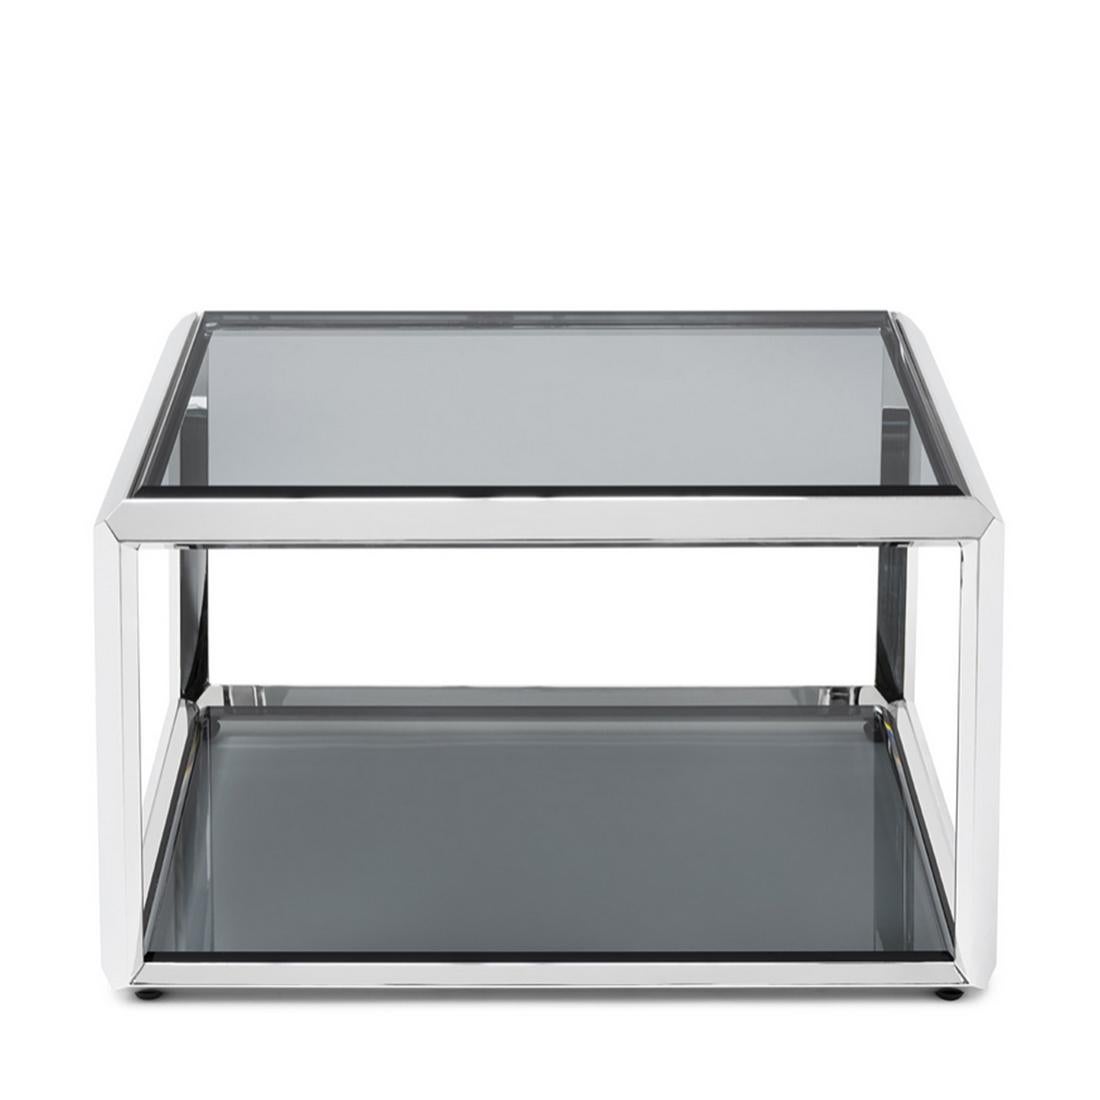 Table d'appoint Casiopee chromée avec structure en finition chromée,
avec un plateau en verre biseauté smocked en haut et en bas de la table basse.